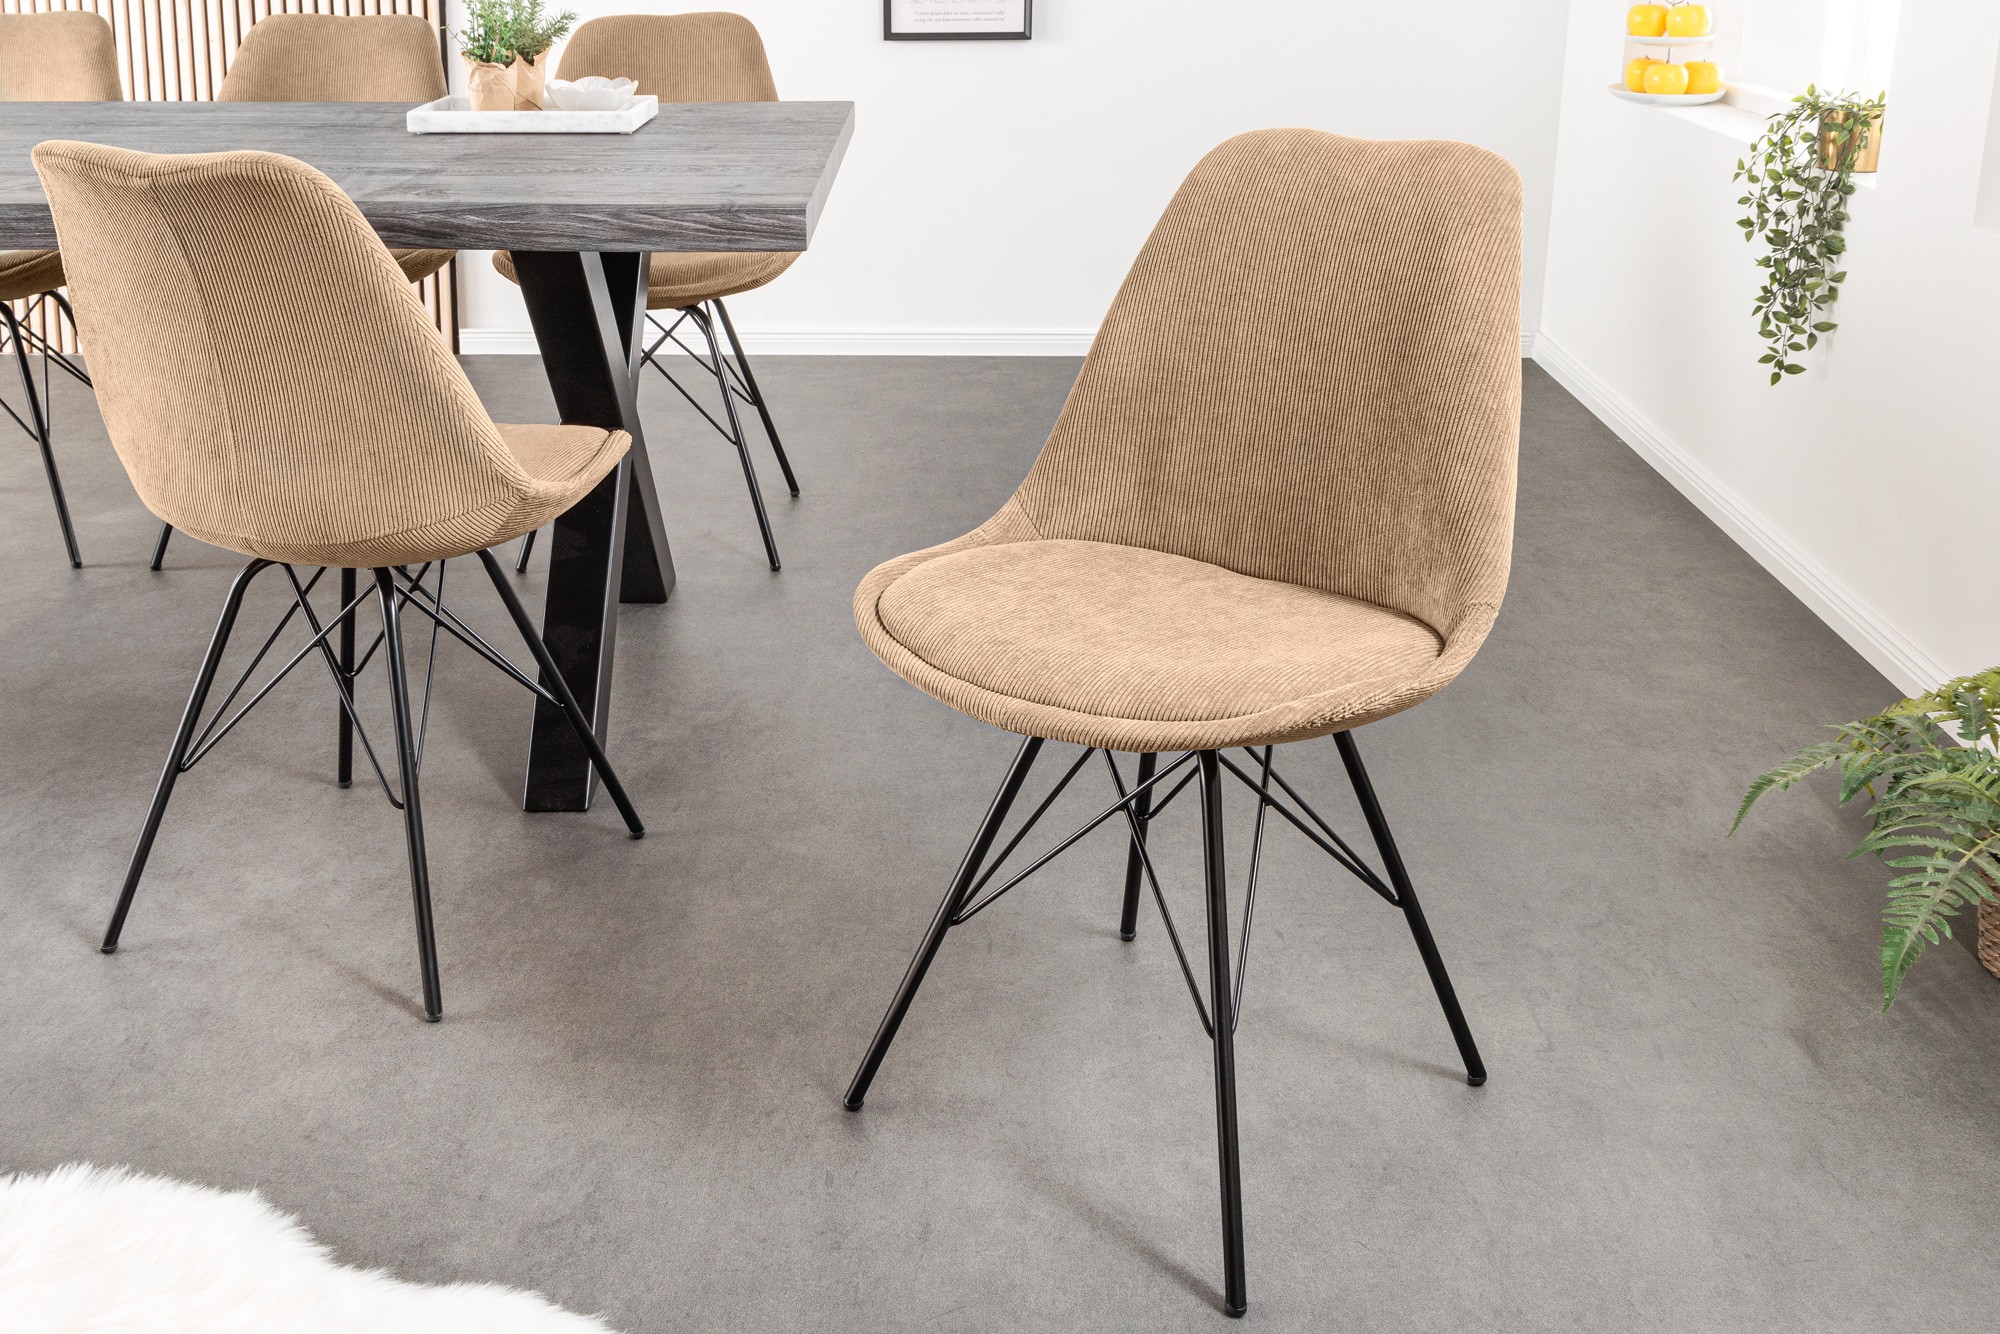 Estila Moderná dizajnová stolička Scandinavia s menčestrovým čalúnením v ovsenej farbe